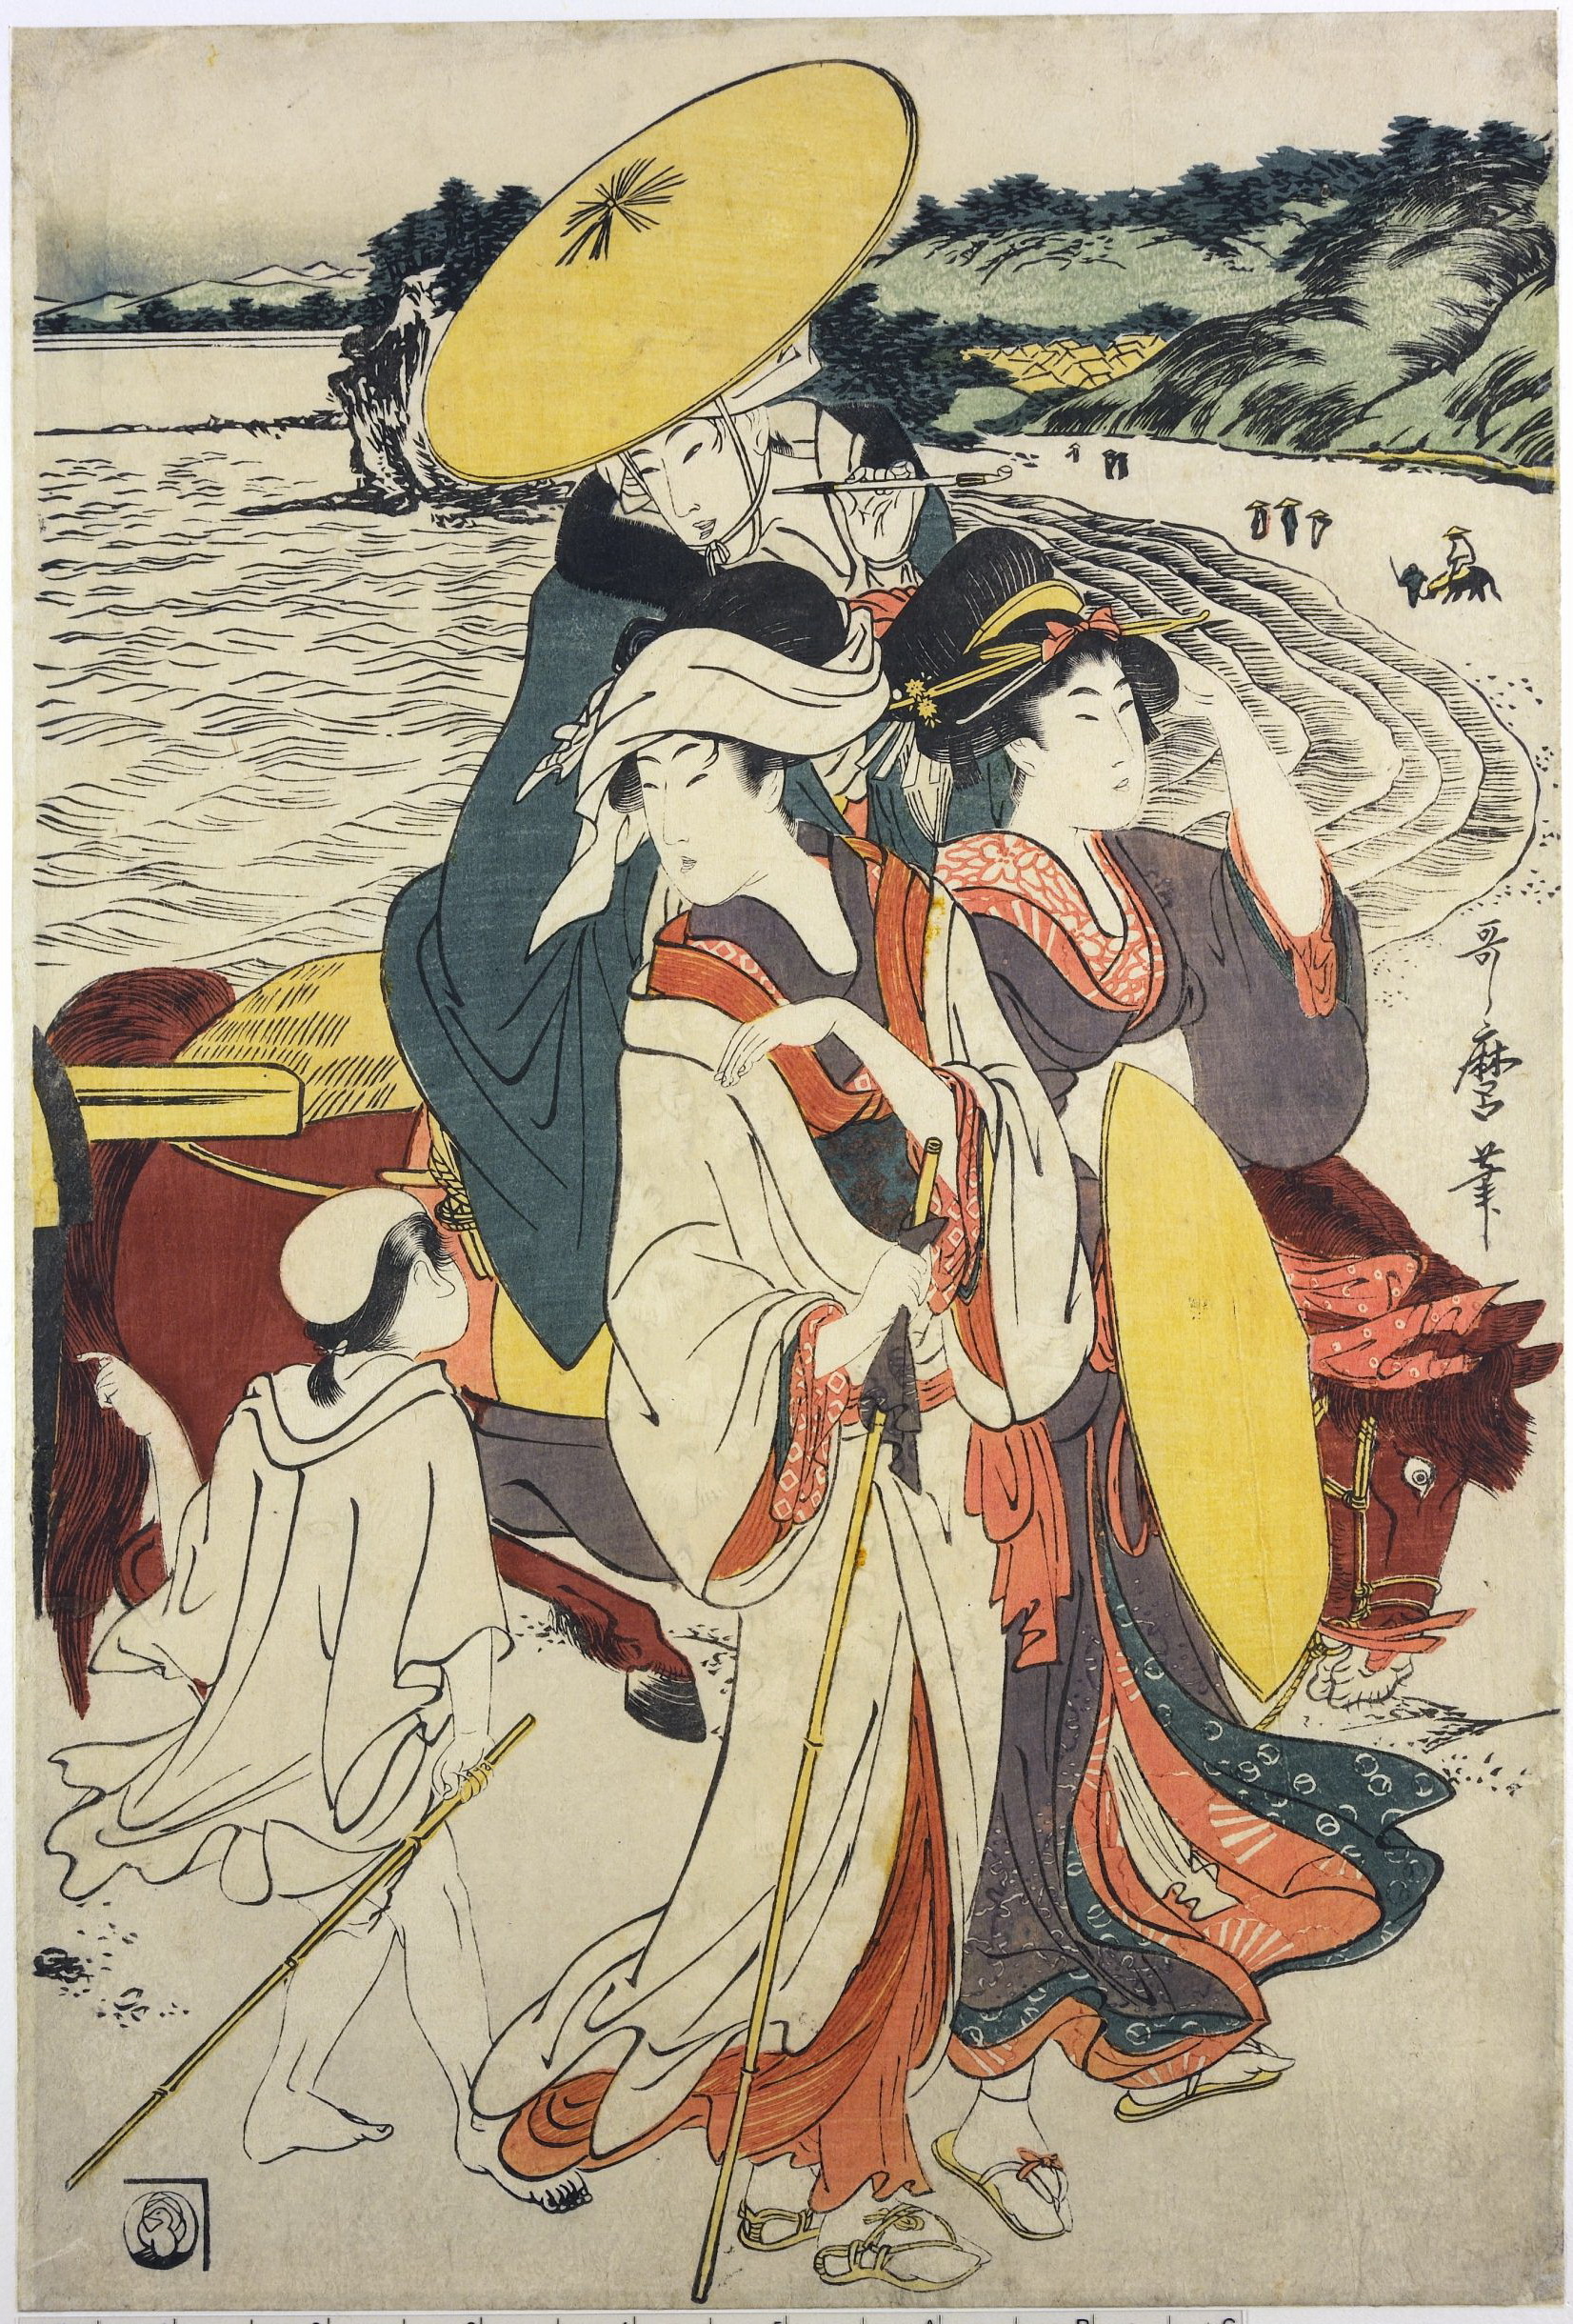 Artworks By Kitagawa Utamaro 1753 1806 1446 работ Часть 4